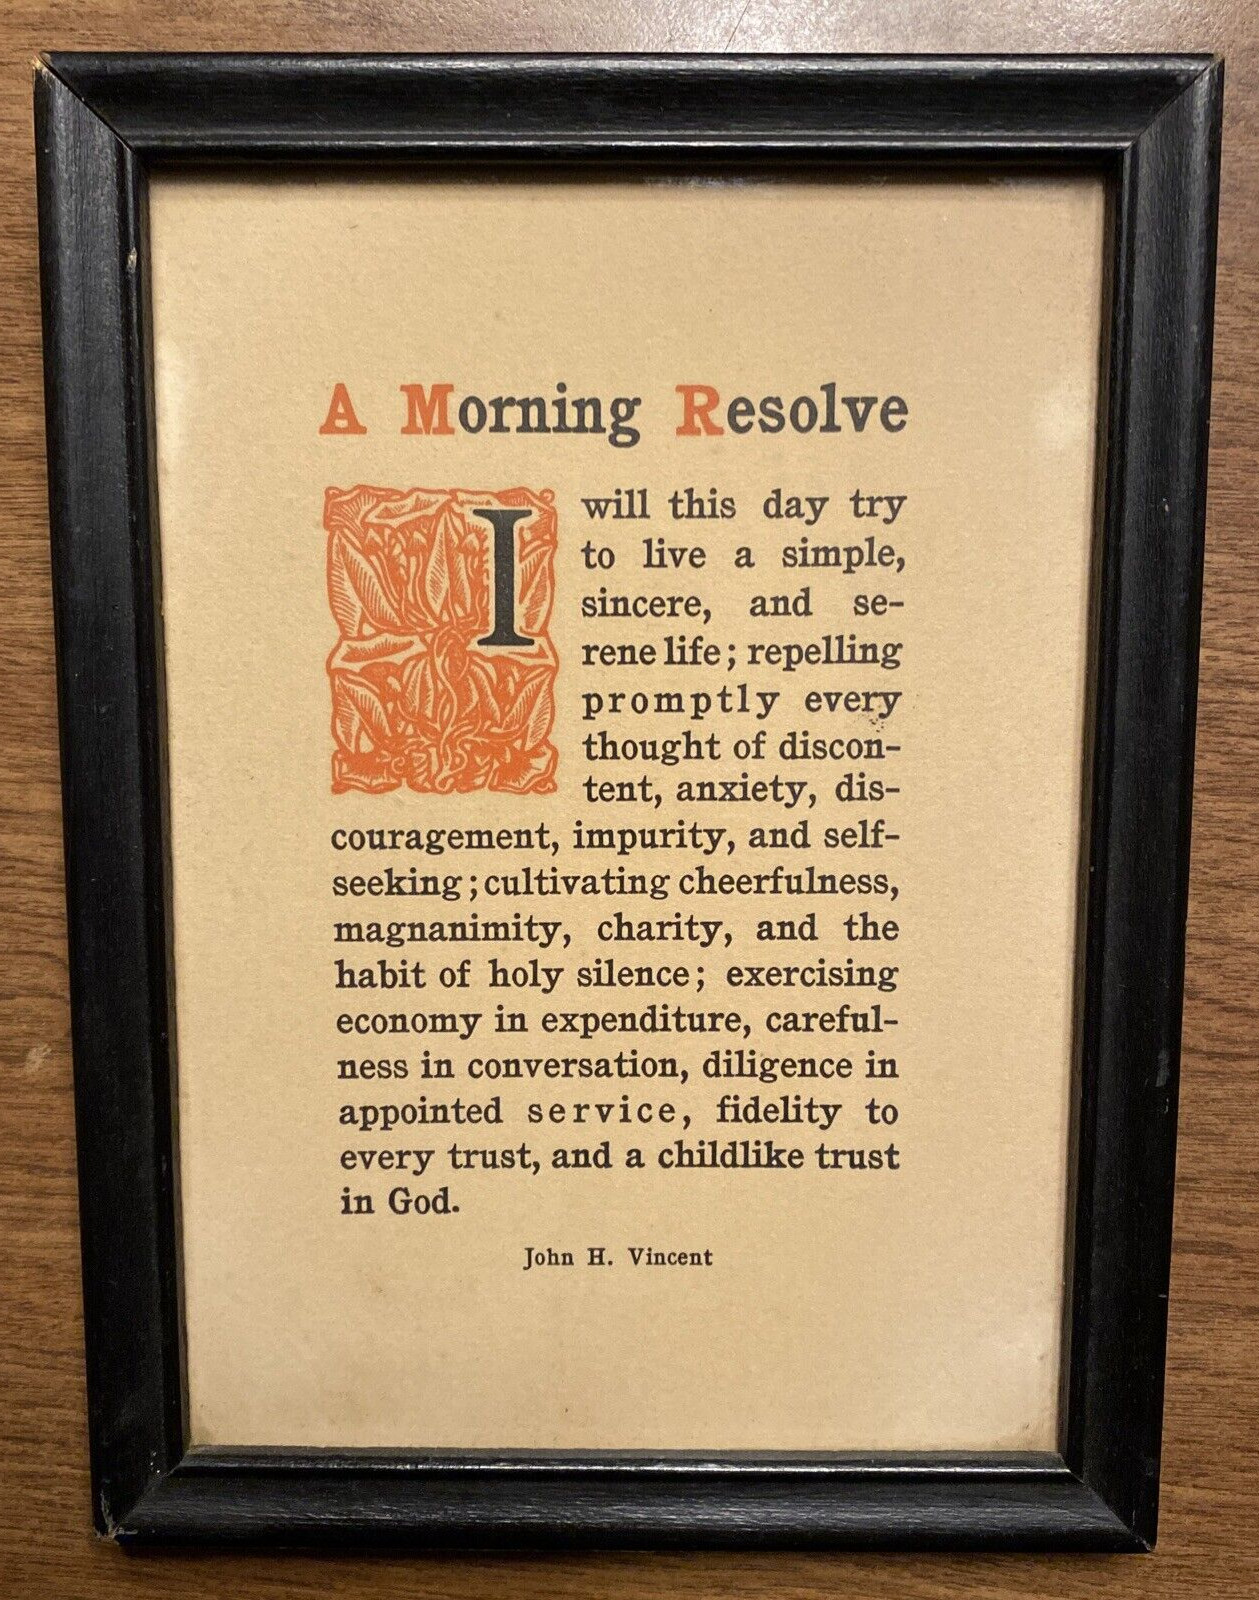 Vintage Bishop John H. Vincent “A Morning Resolve” Daily Religious Prayer Poem